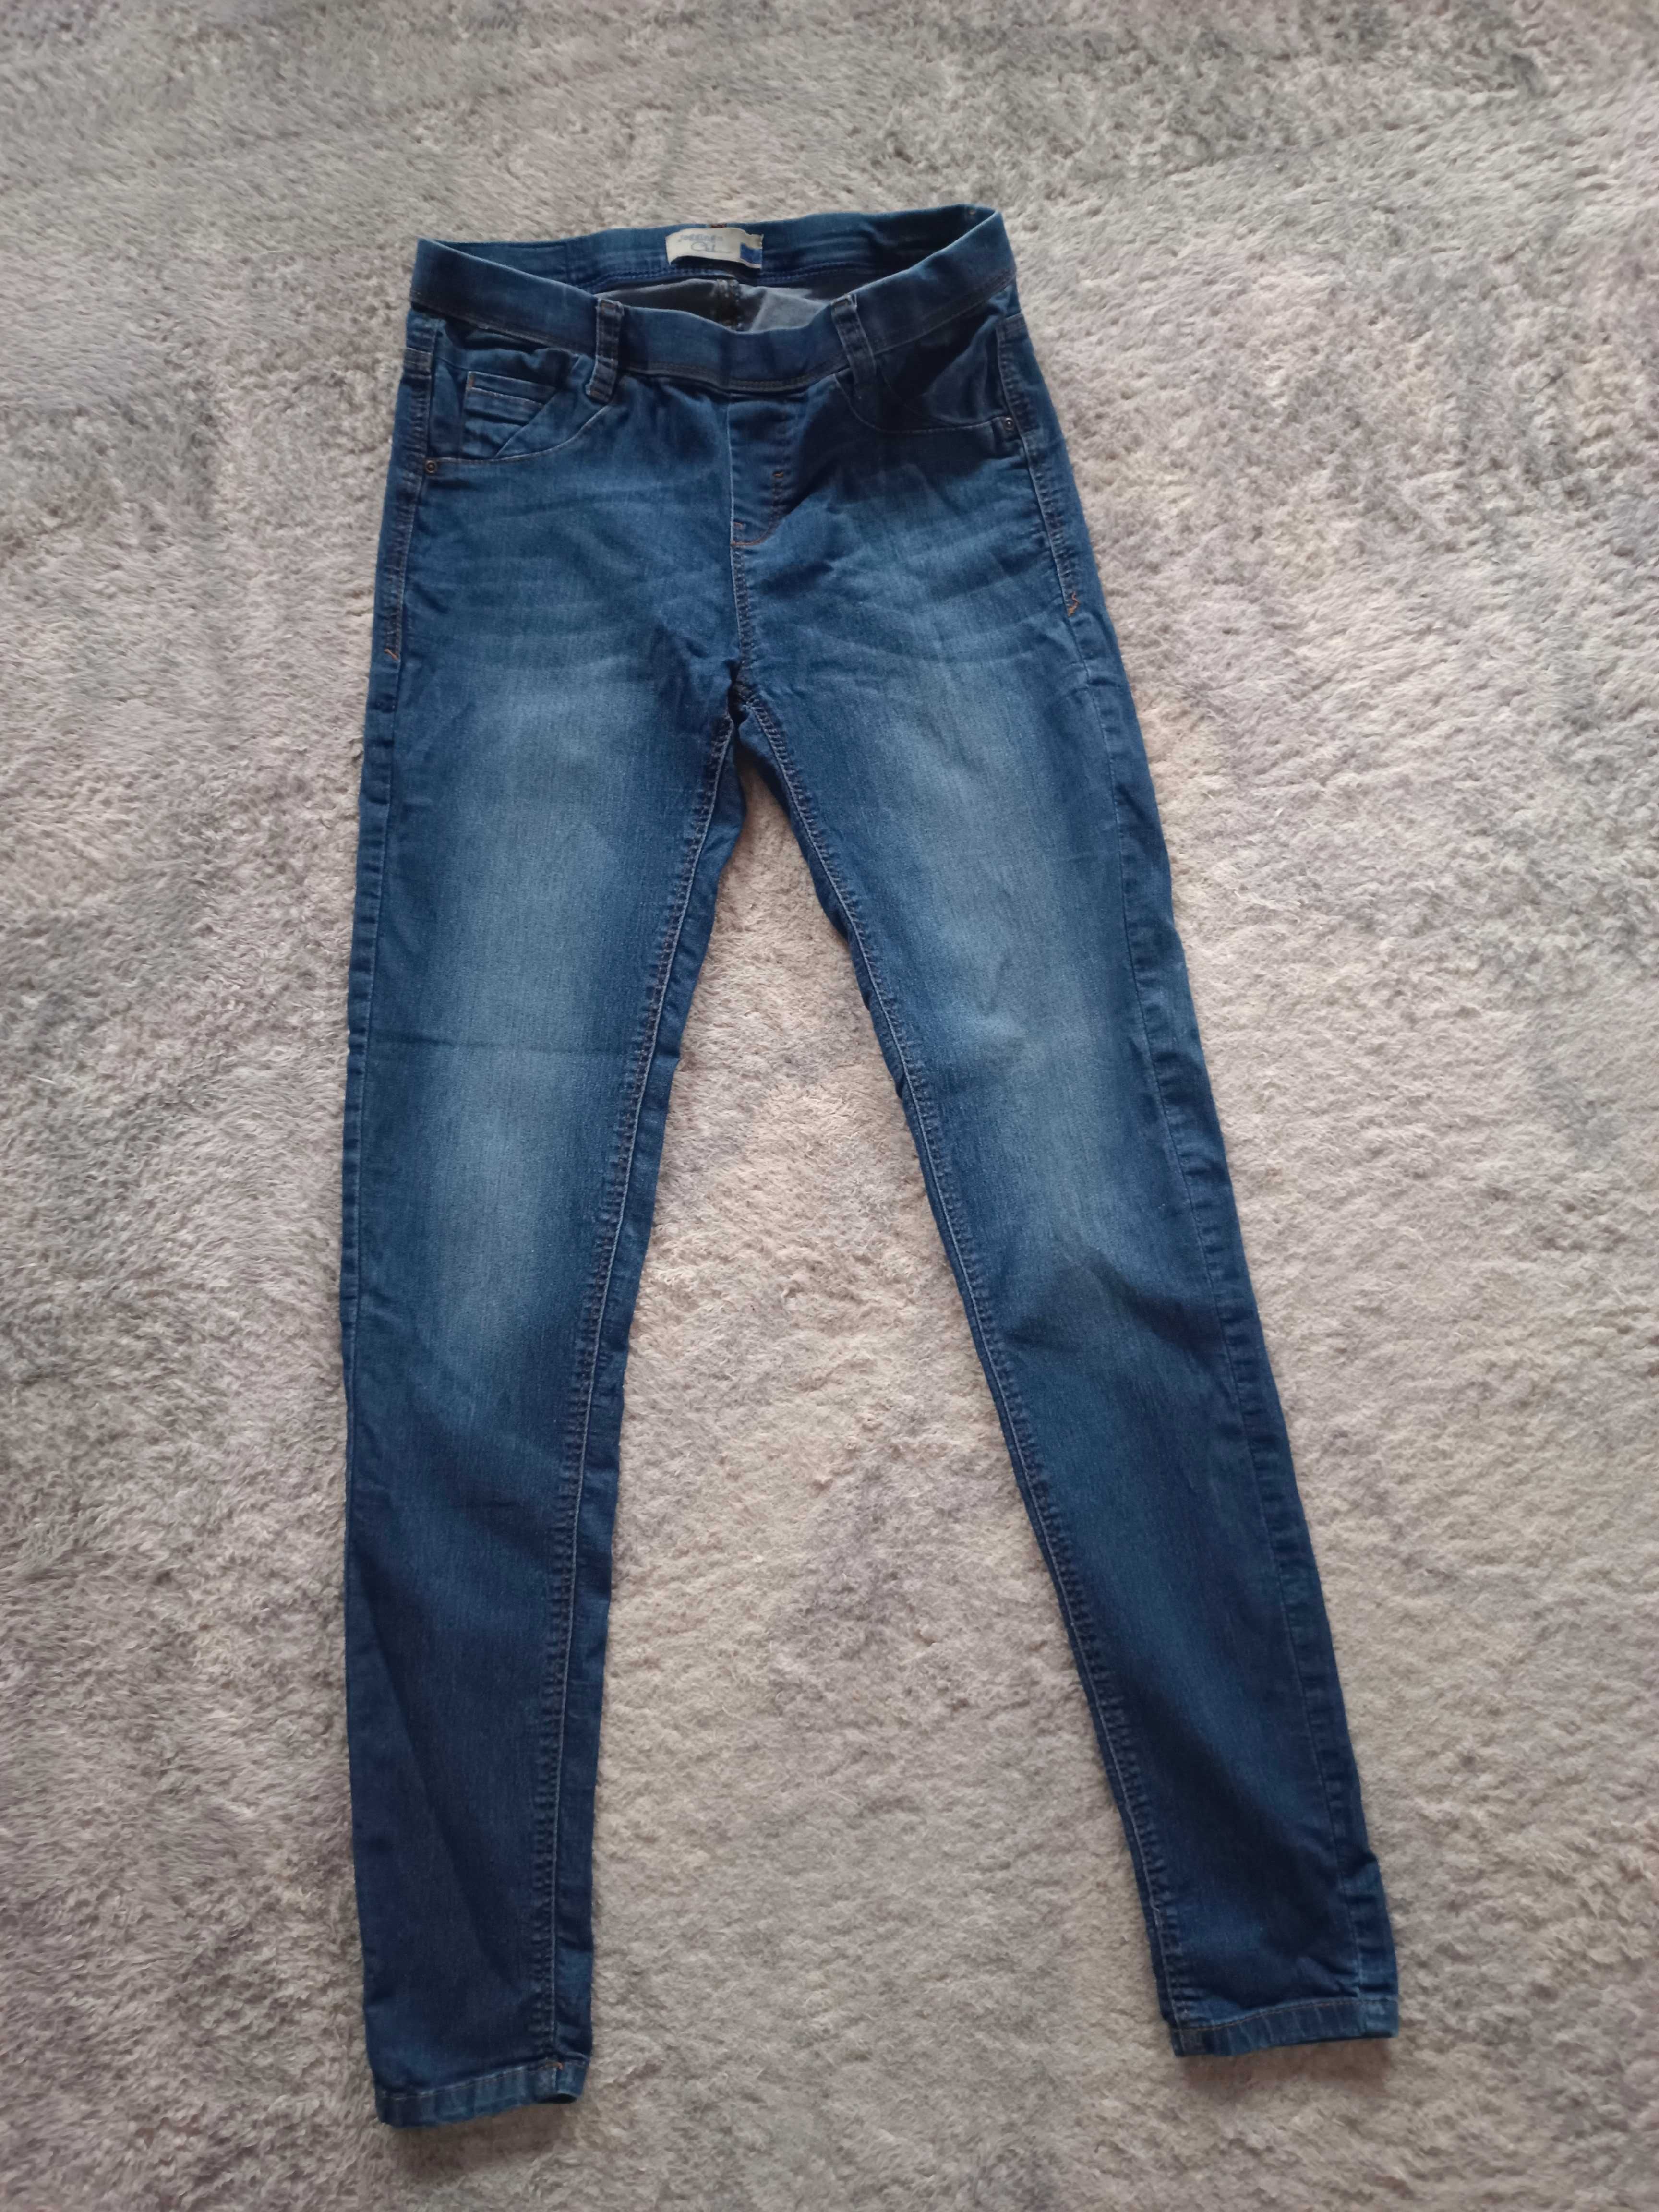 Jegginsy C&A 38, M, ciemny niebieski z przetarciami, miękki jeans